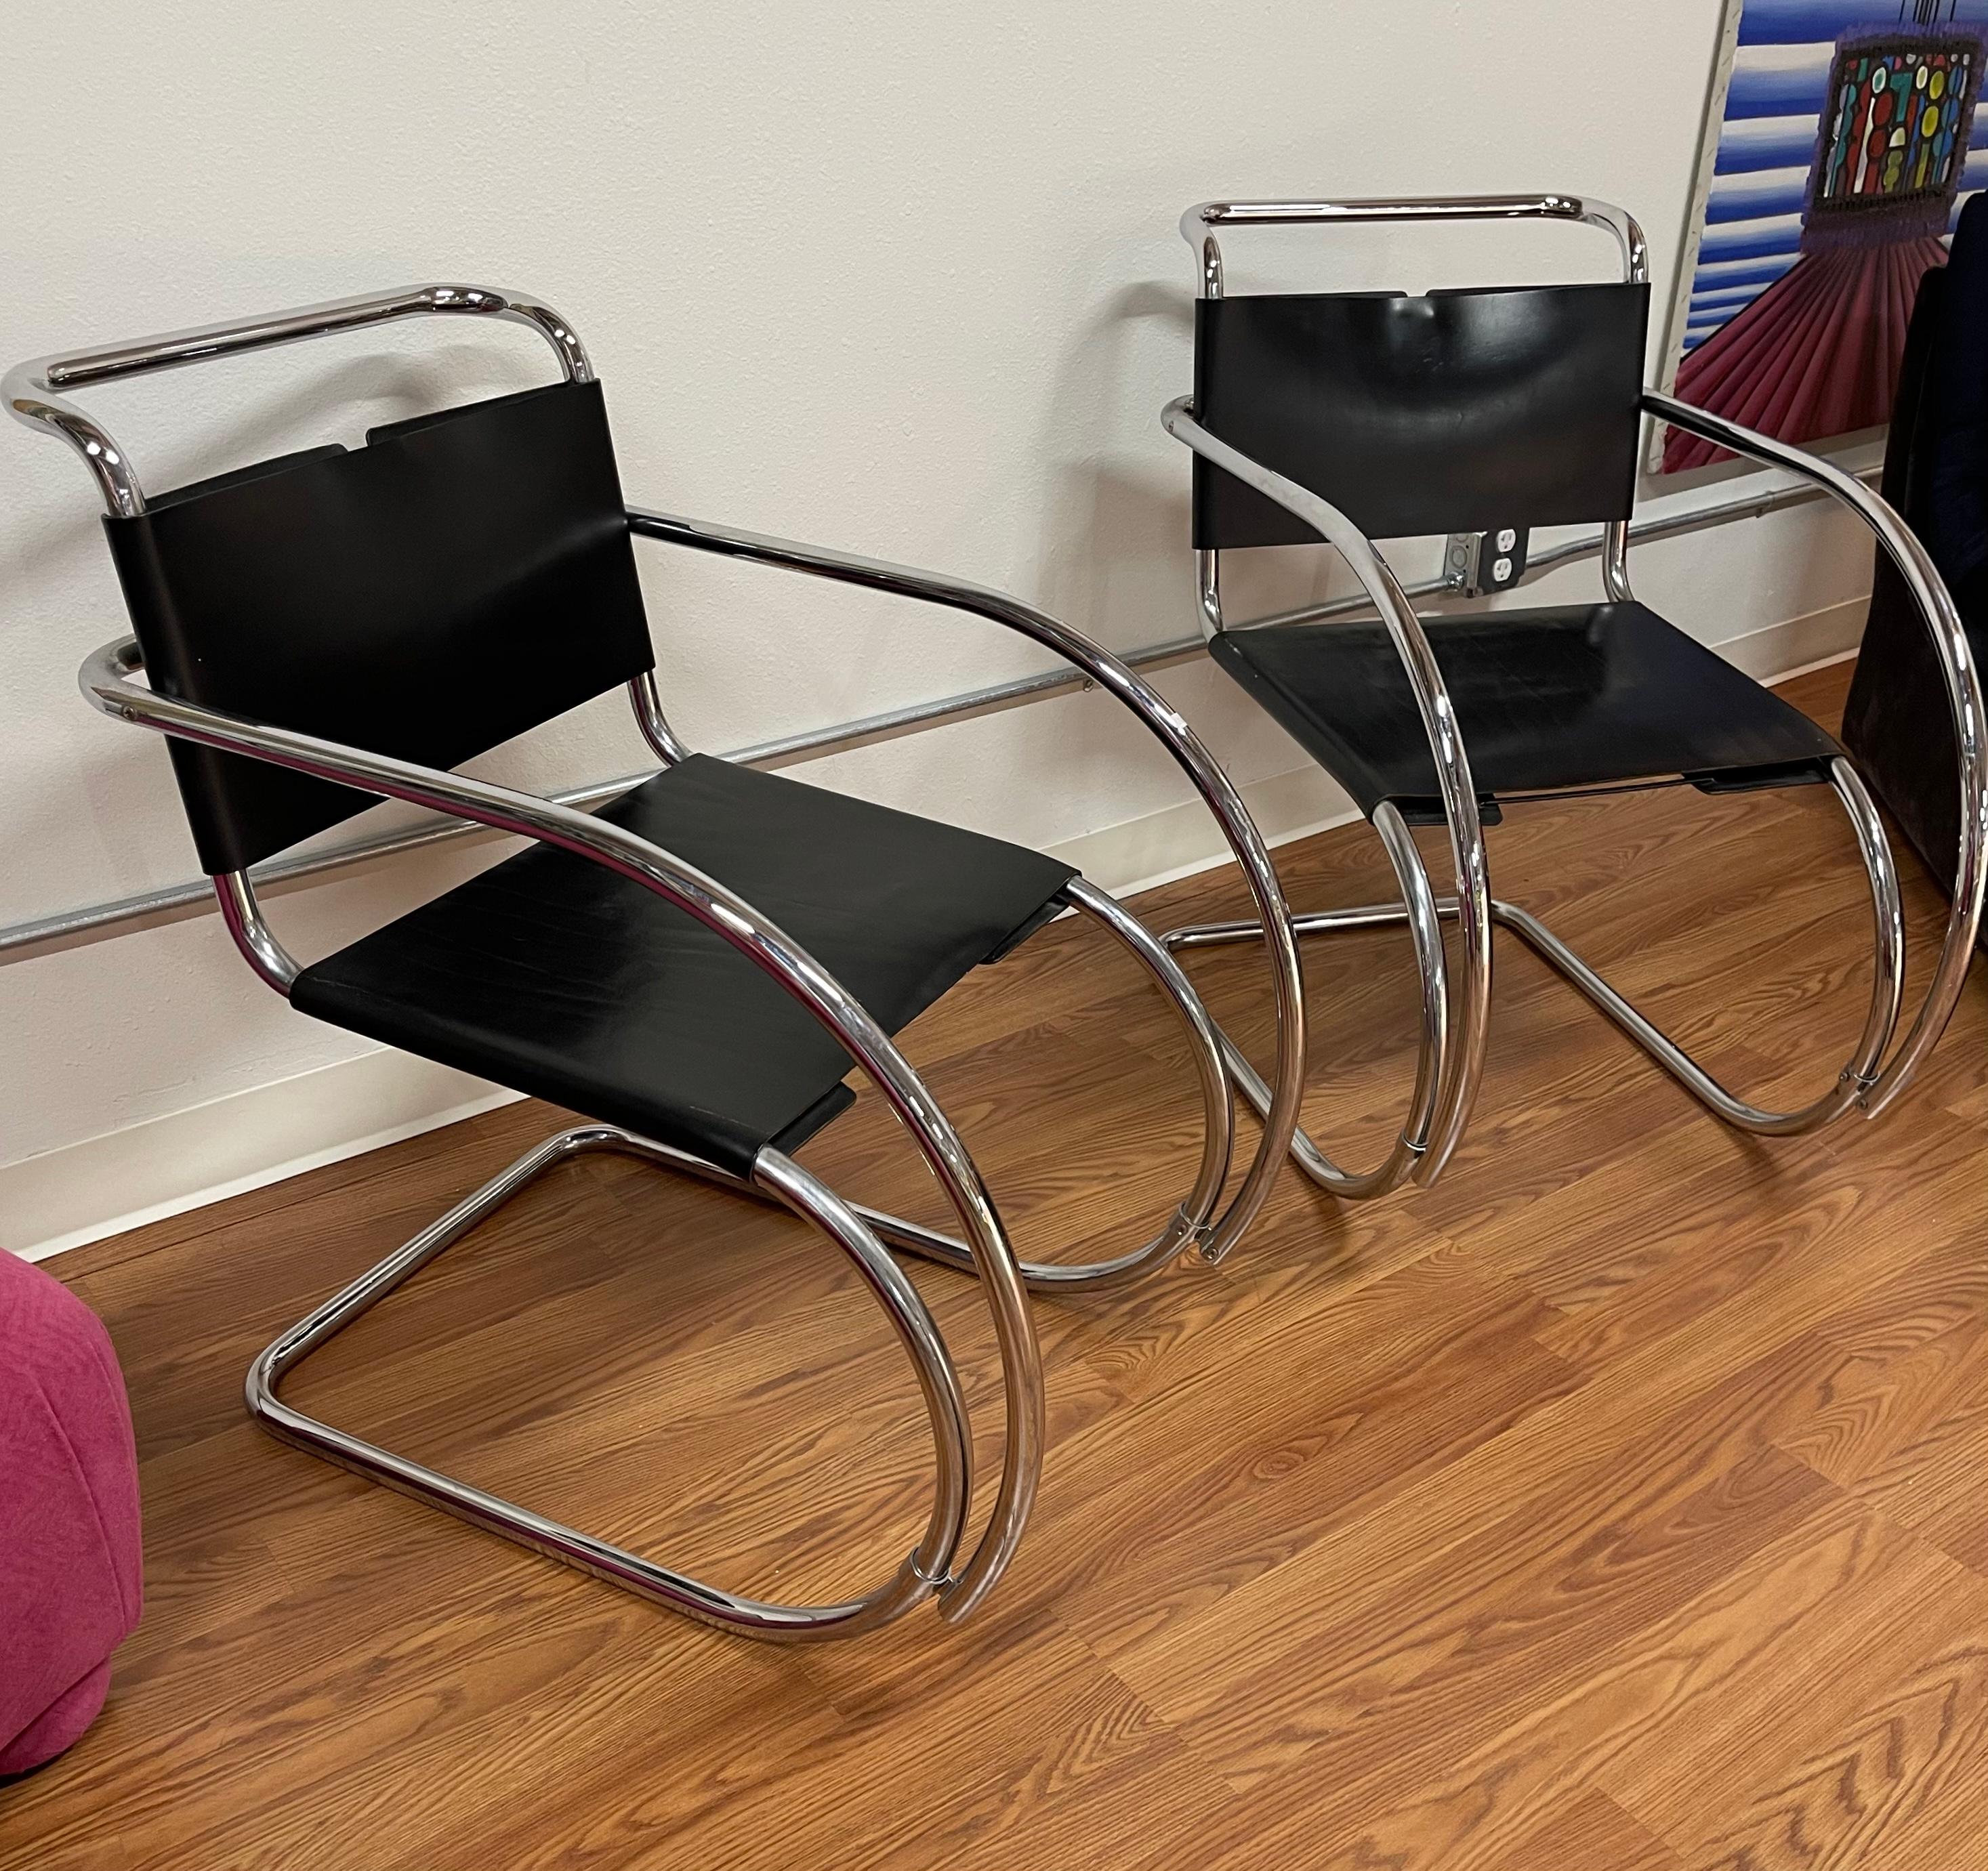 Ein Paar MR-Stühle aus den 1970er Jahren von Stendig in schwarzem Leder. Die Stühle sind für ihr Alter in gutem Zustand. Das Leder ist ein wenig steif und hat Abnutzungserscheinungen. Das Chrom hat auch einige Spuren. Tolle Vintage-Stühle.